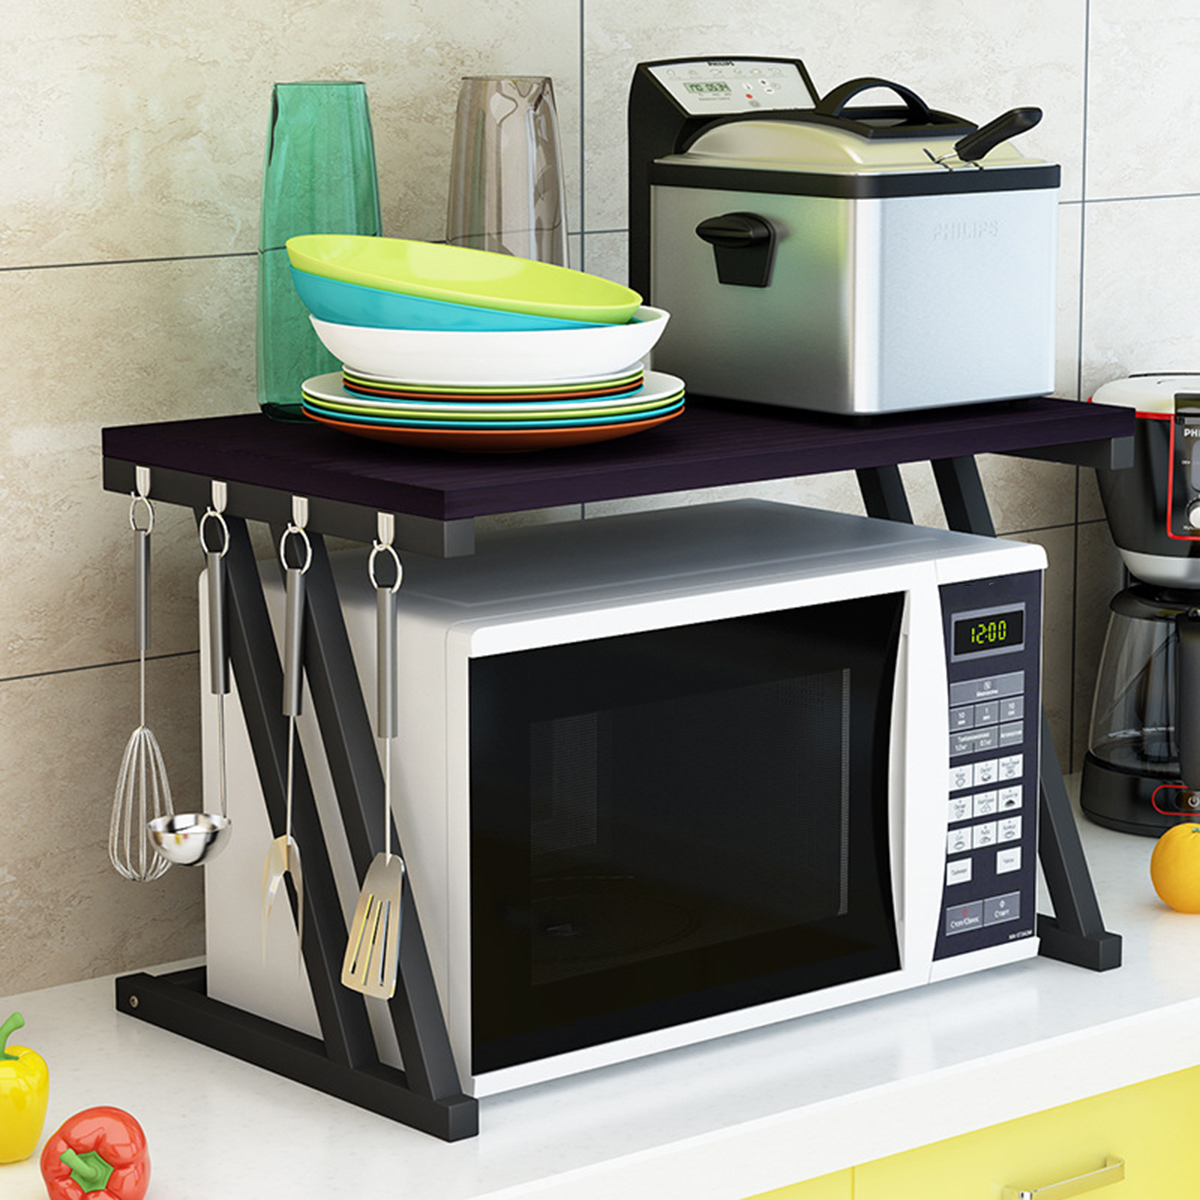 2-Tier-Kitchen-Baker-Rack-Microwave-Oven-Stand-Storage-Cart-Workstation-Shelf-Desktop-Organizer-1633559-1